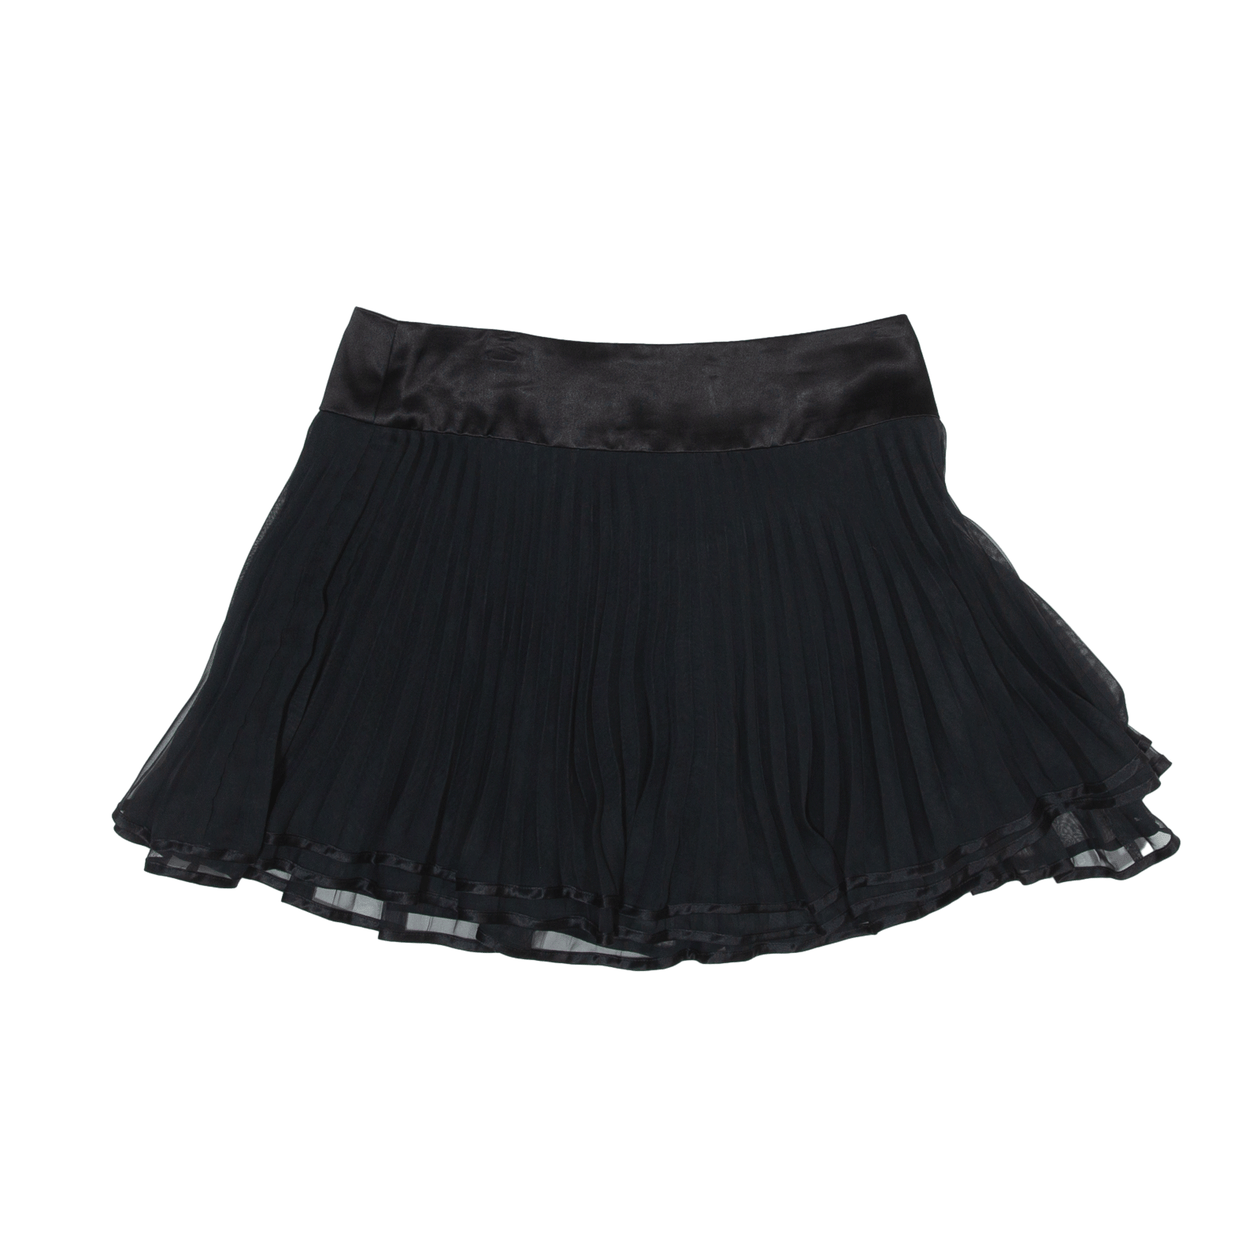 Short pleated Skirt, Black